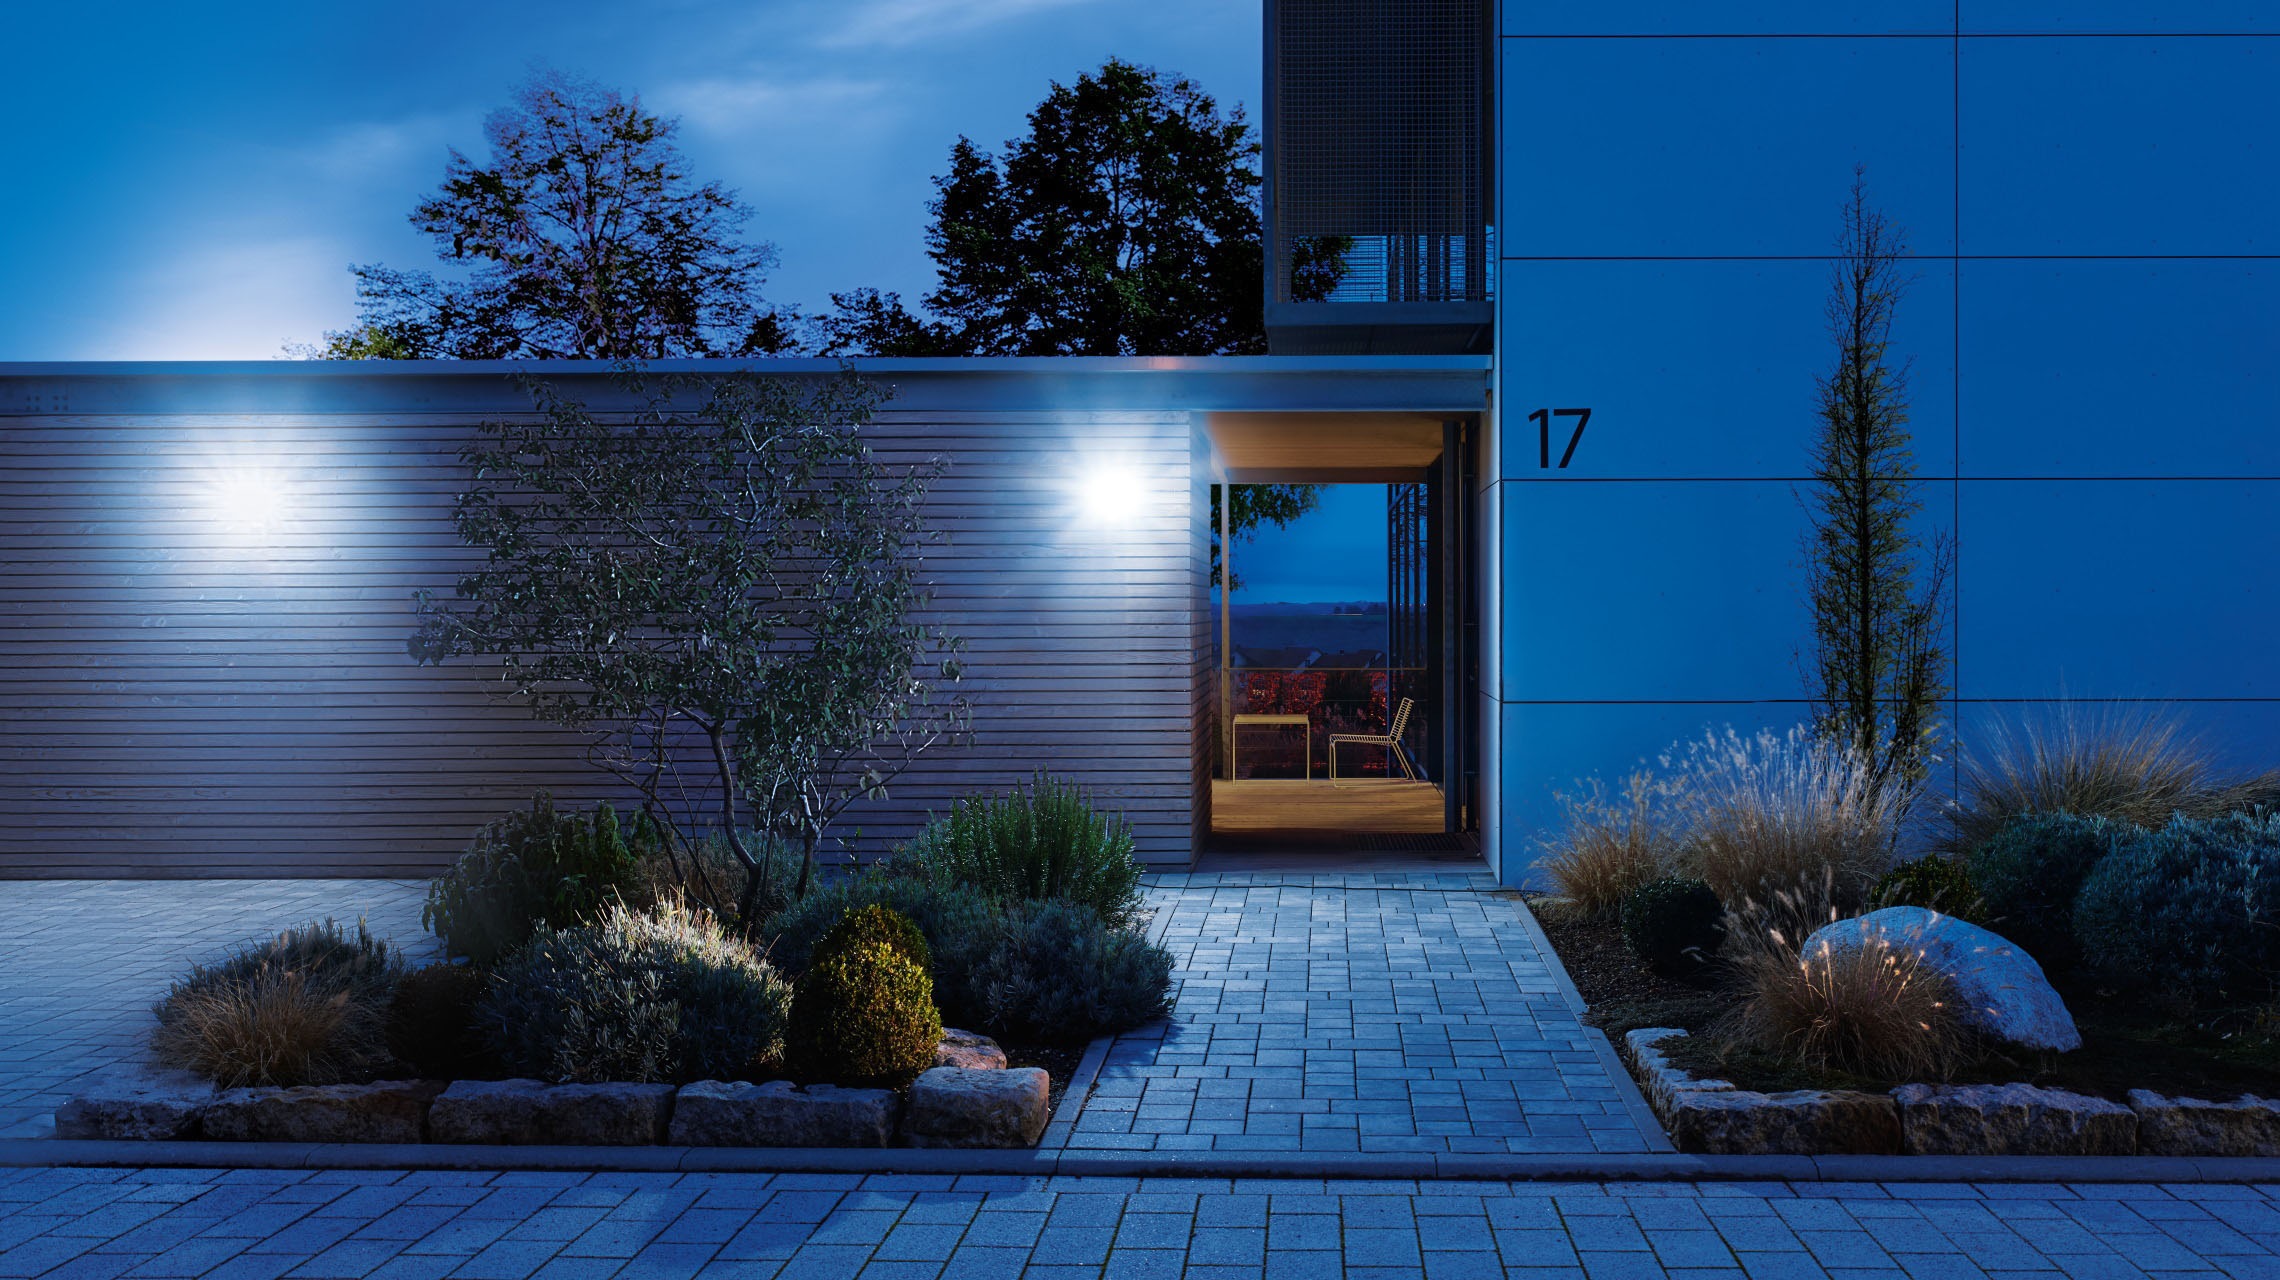 steinel Flutlichtstrahler »Home«, 180° Bewegungsmelder,Smart Home,Bluetooth, App-Steuerung, LED-Strahler